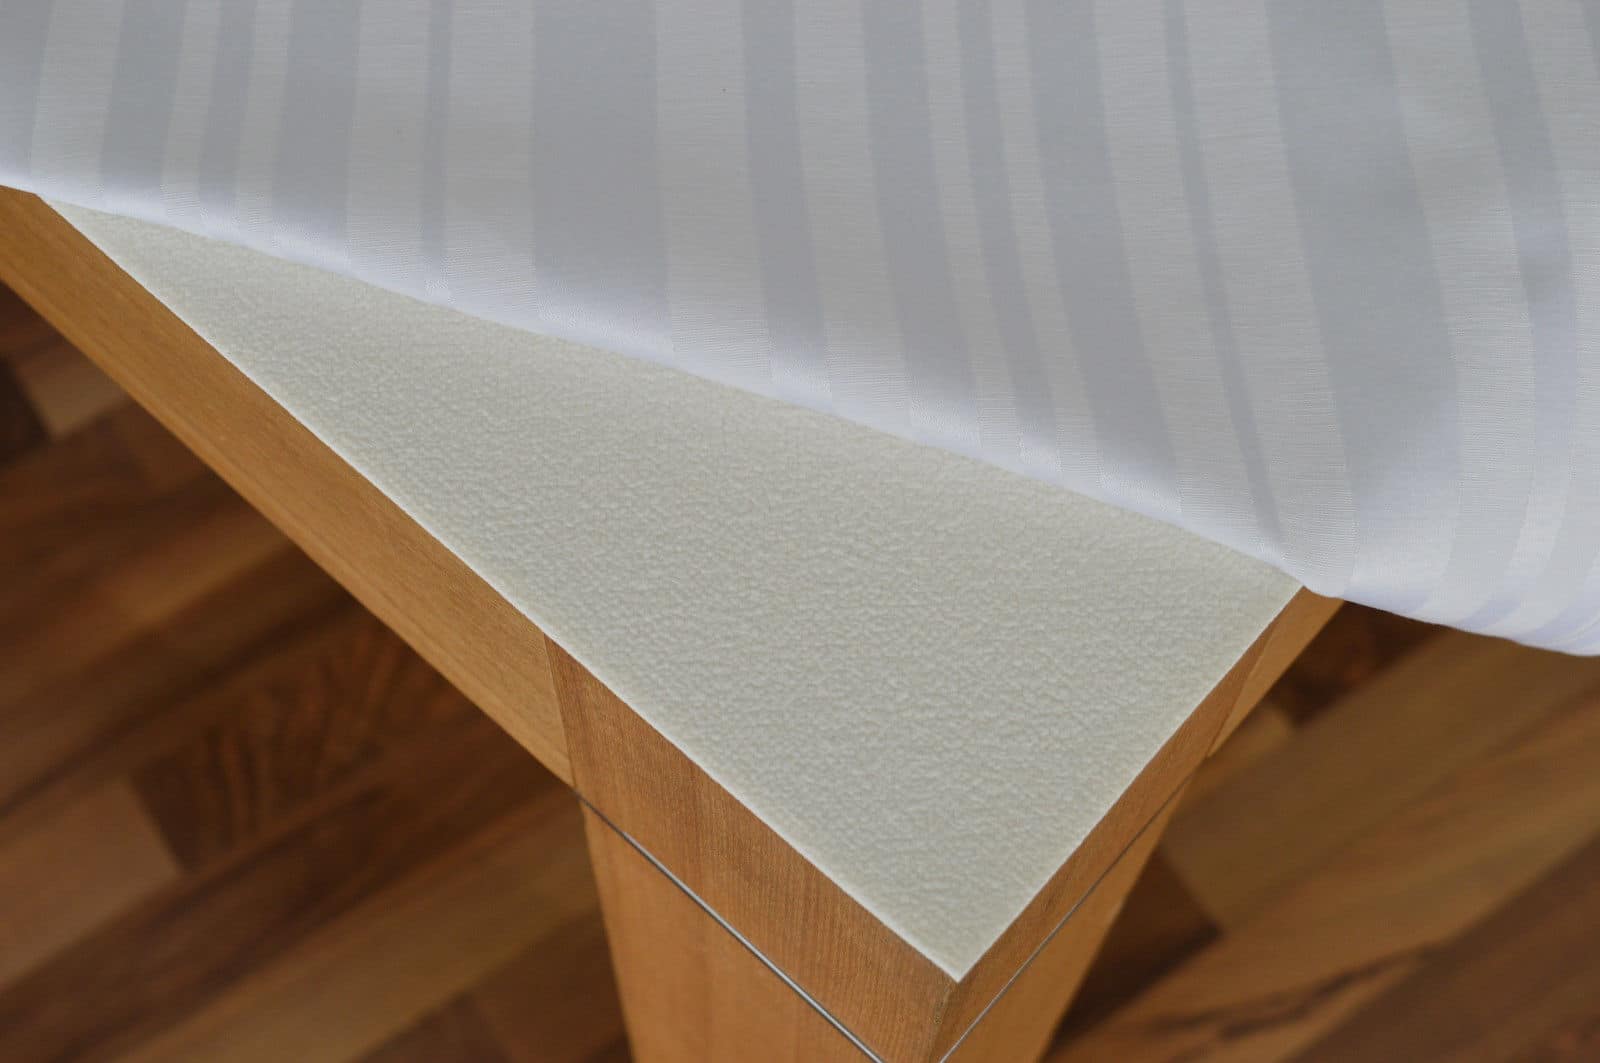 Rutschfeste Tischdeckenunterlagen kaufen & Ihre Tischplatte schonen